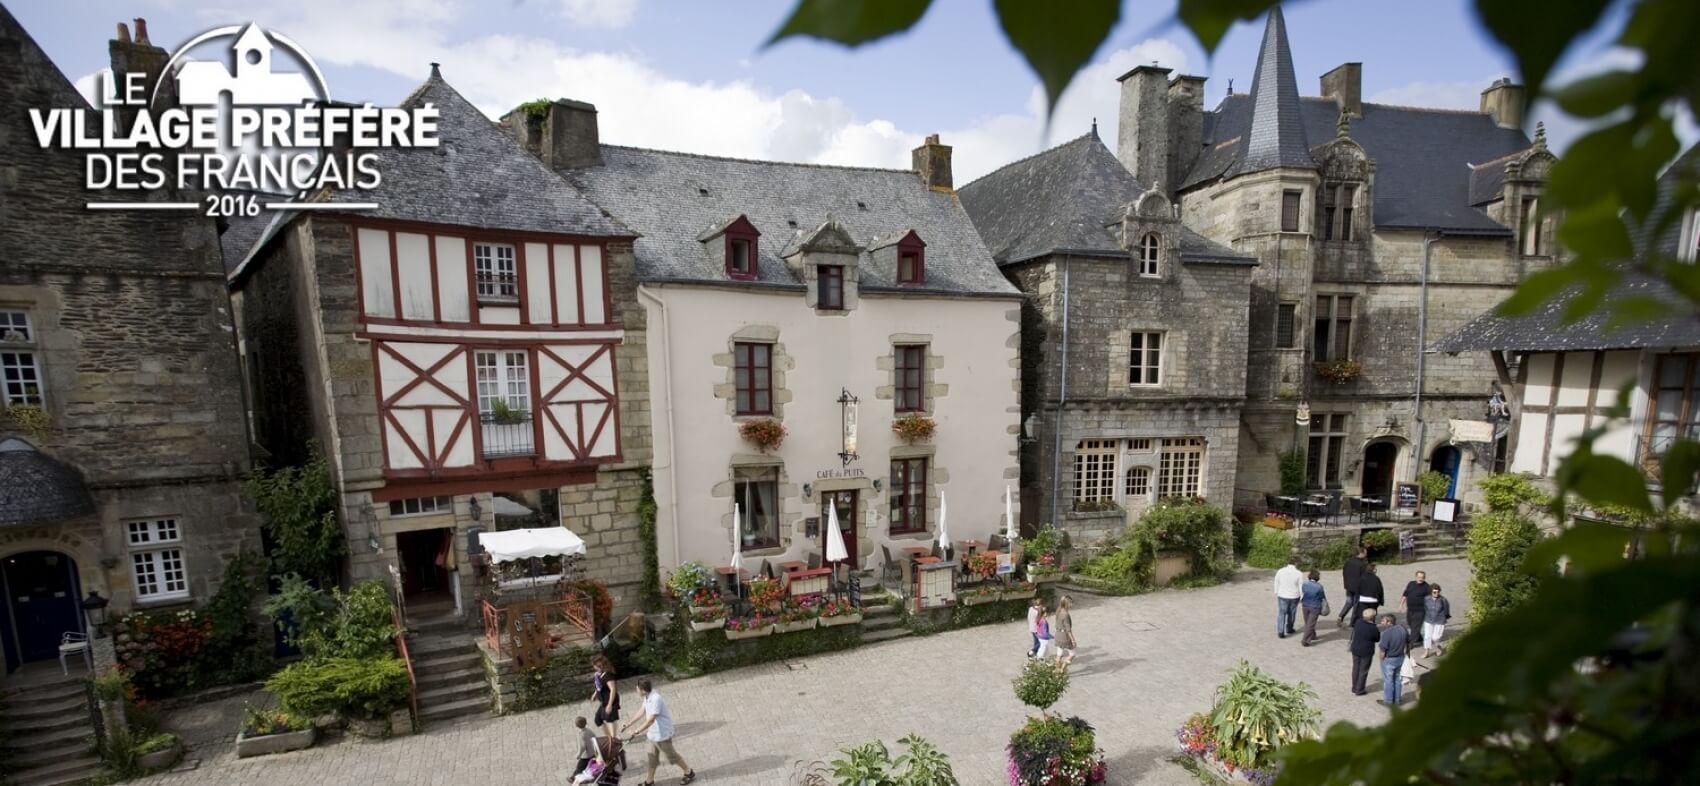 Rochefort en Terre et déjeuner croisière sur la Vilaine - Club de l'Amitié de ST HILAIRE DU HARCOUET